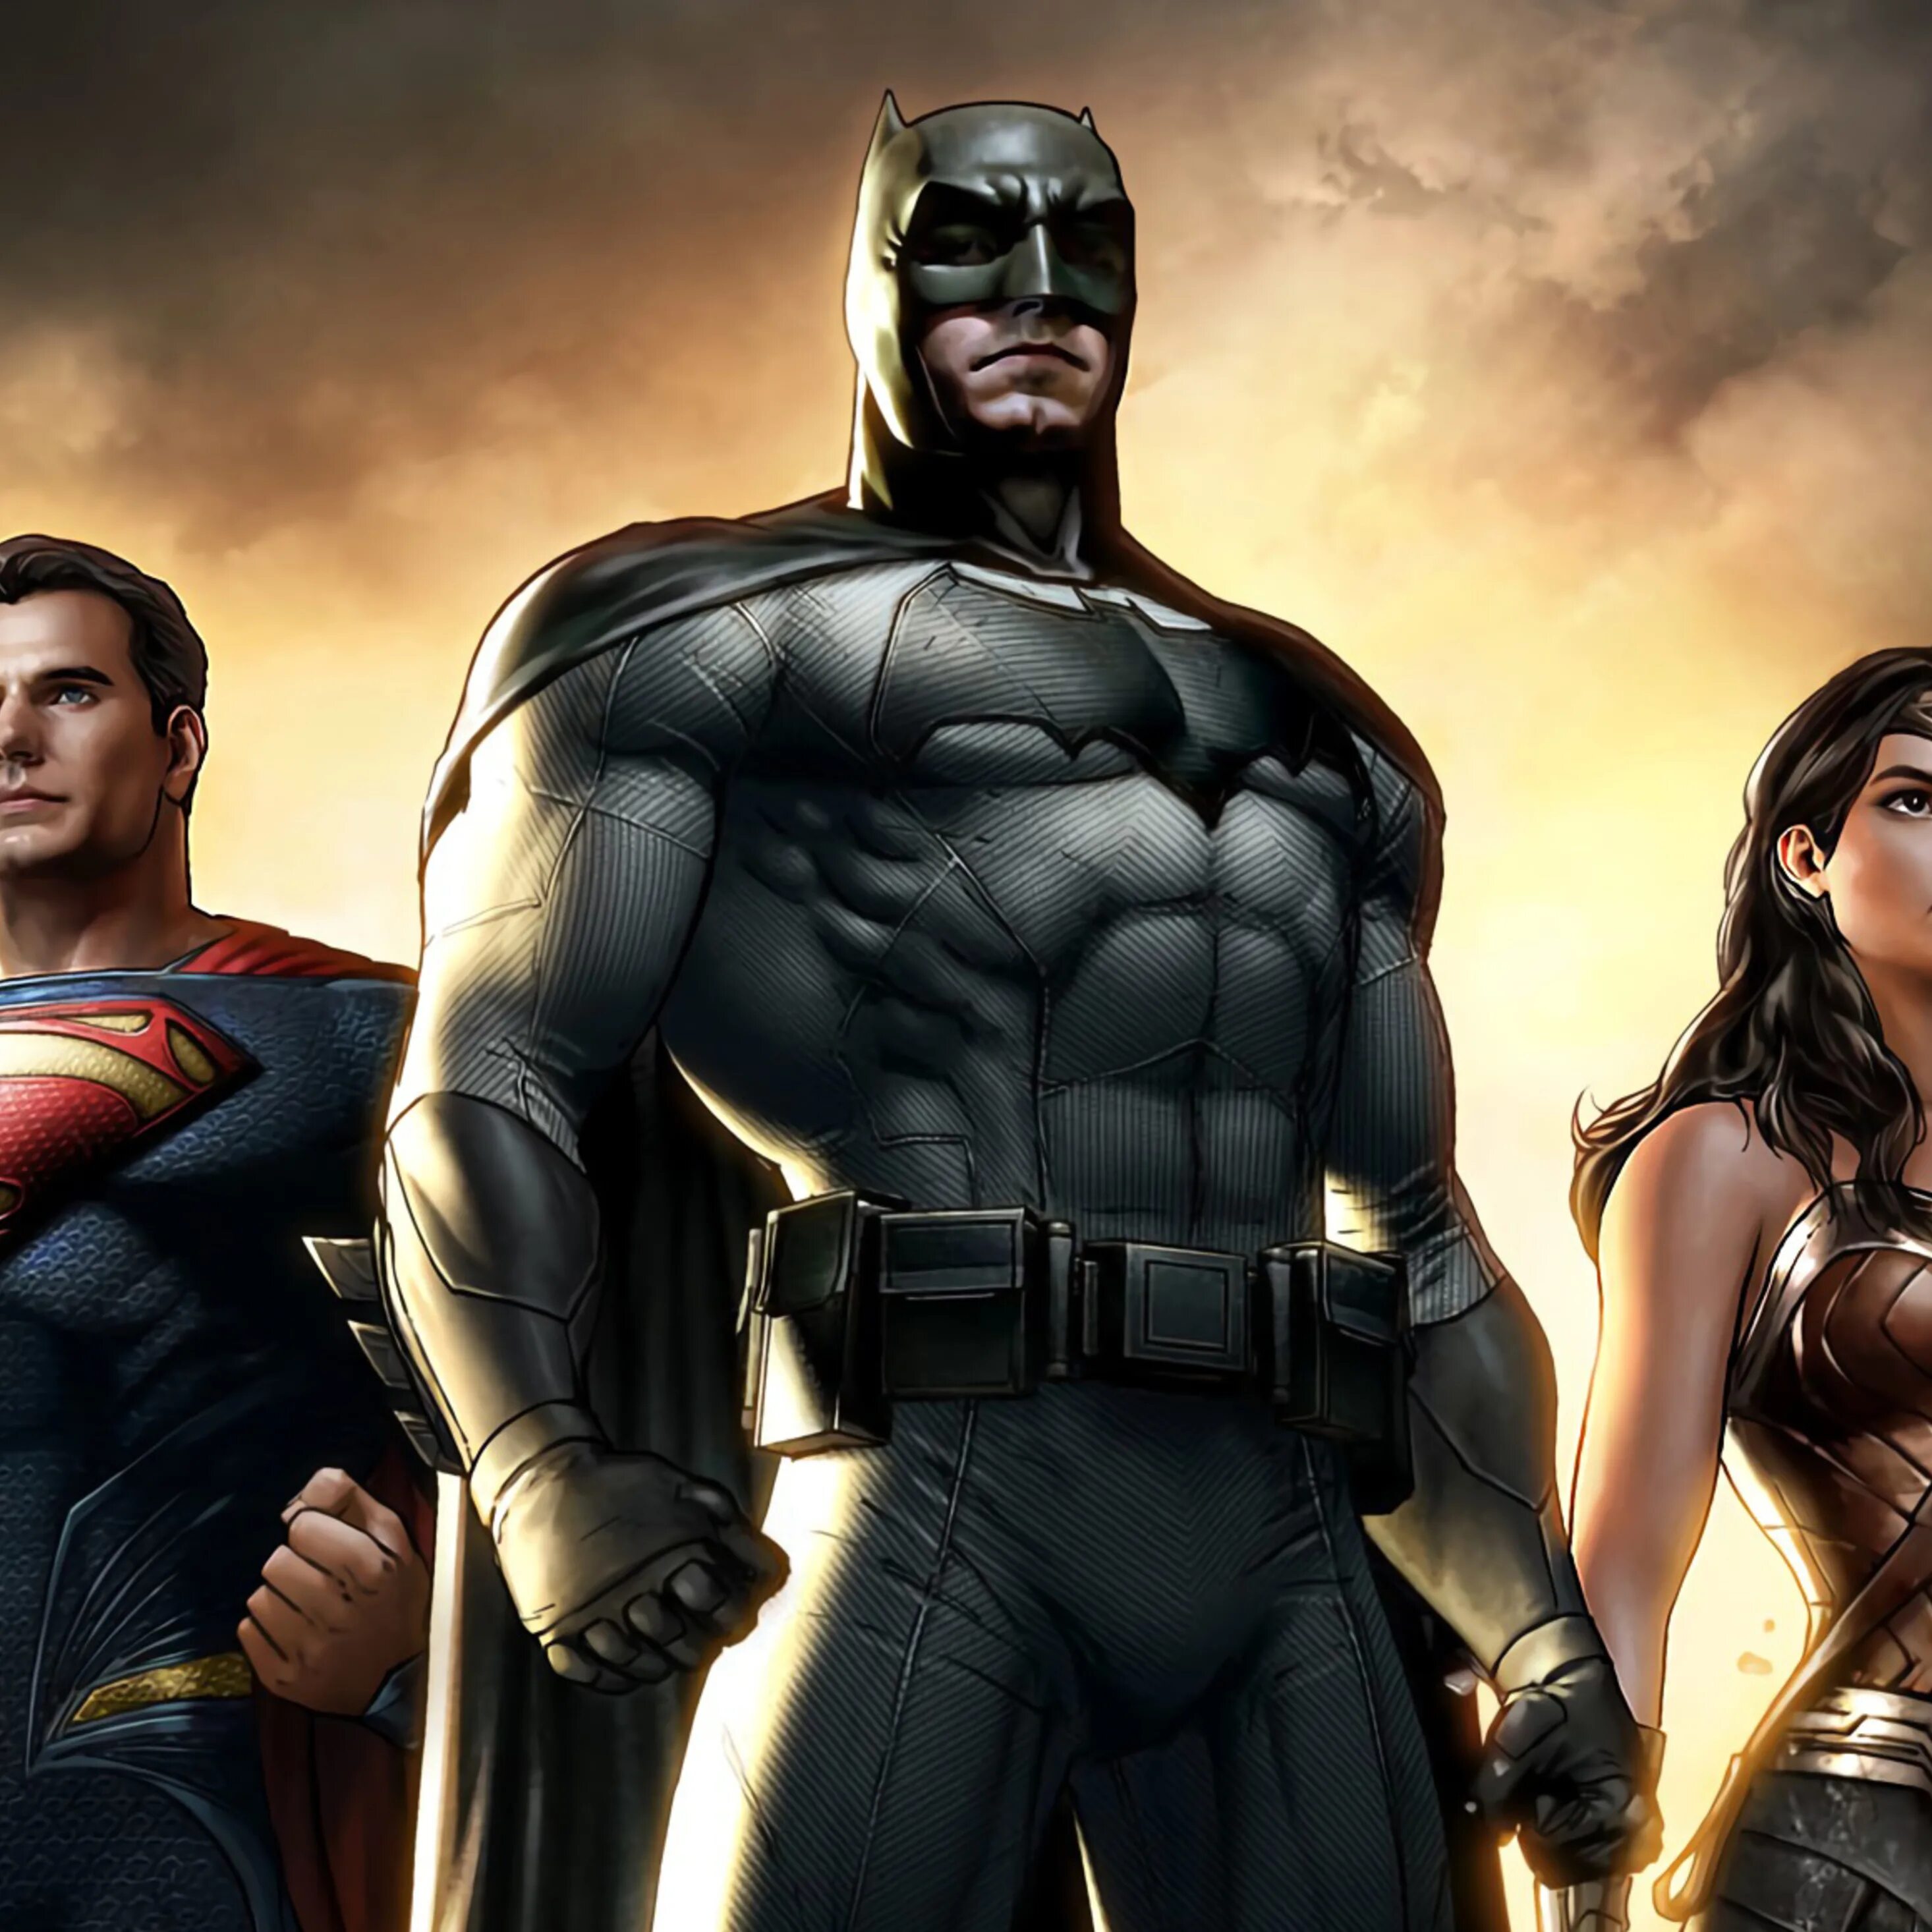 Четверо героев. Супергерои 4 человека. Лига справедливости 2017 Бэтмен. Индийские Супергерои. Четыре героя.